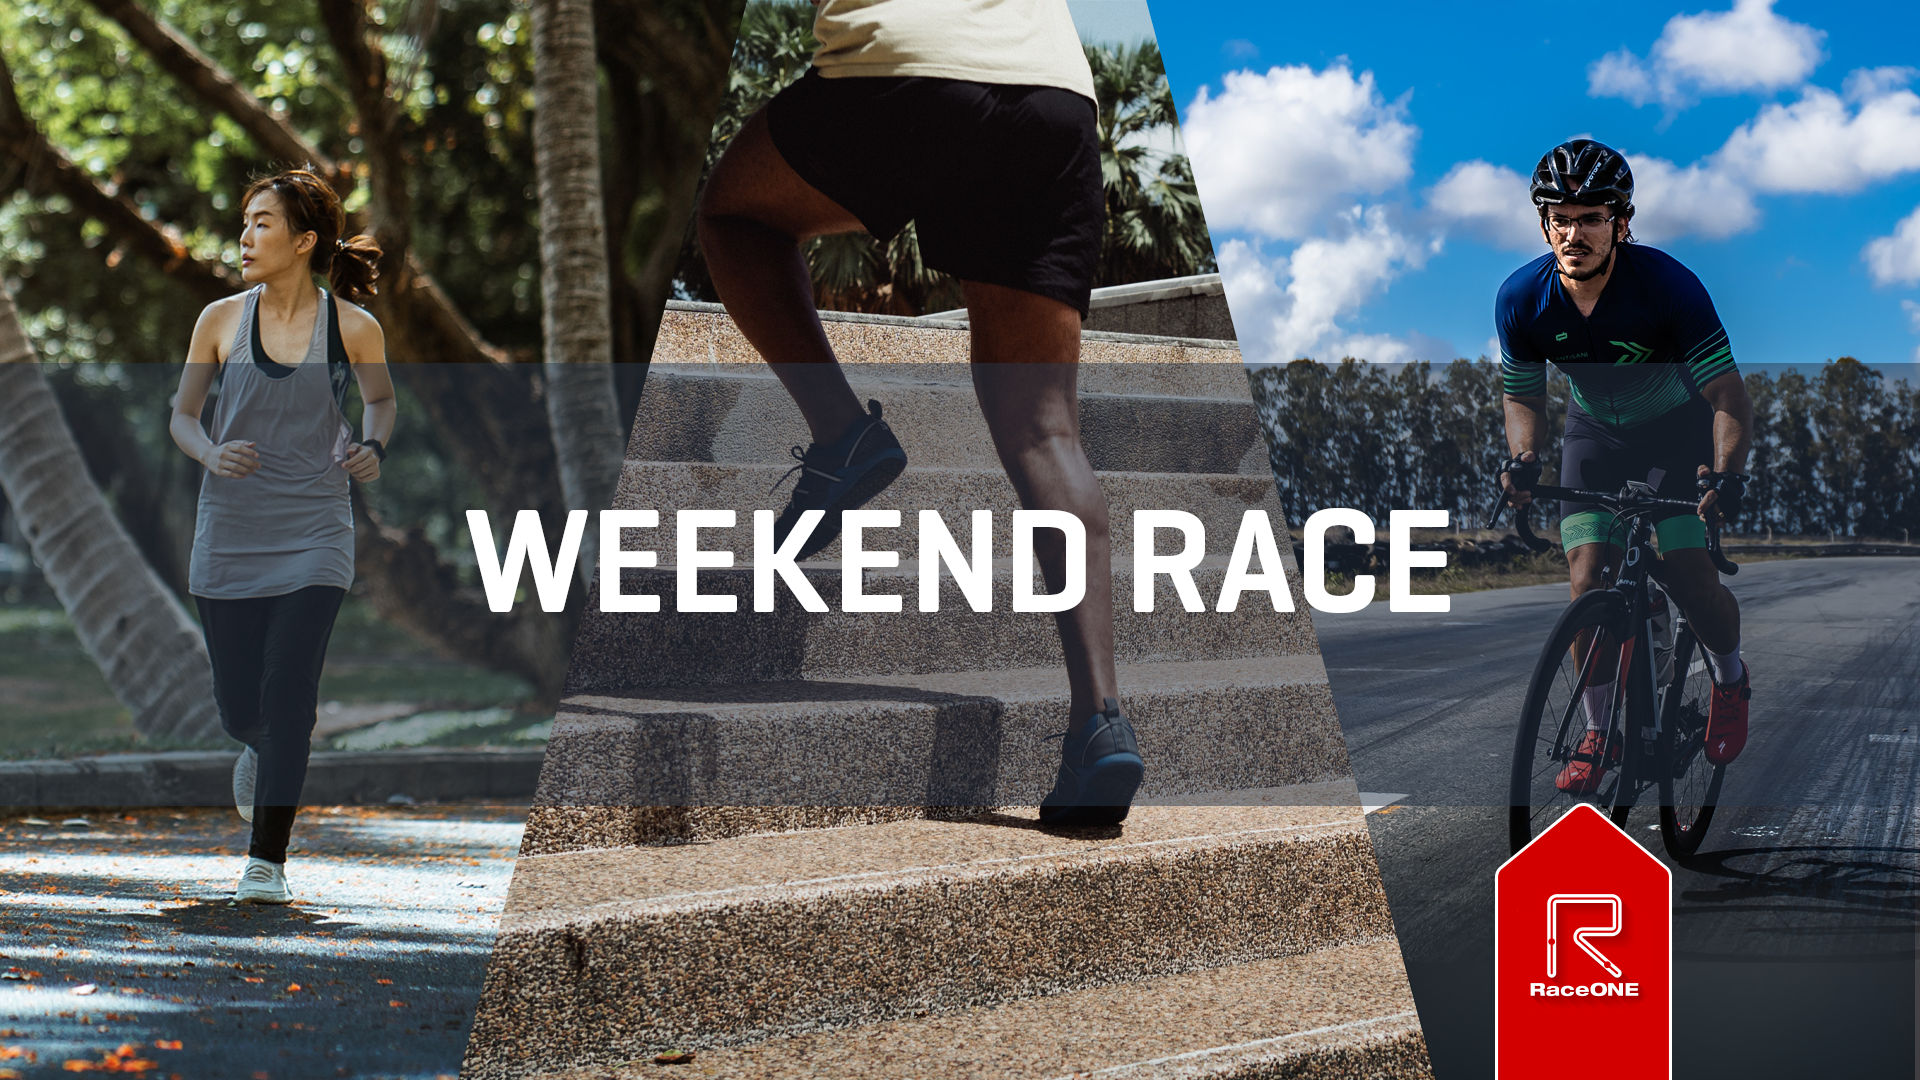 Weekend Race - Week 47 - 5 km